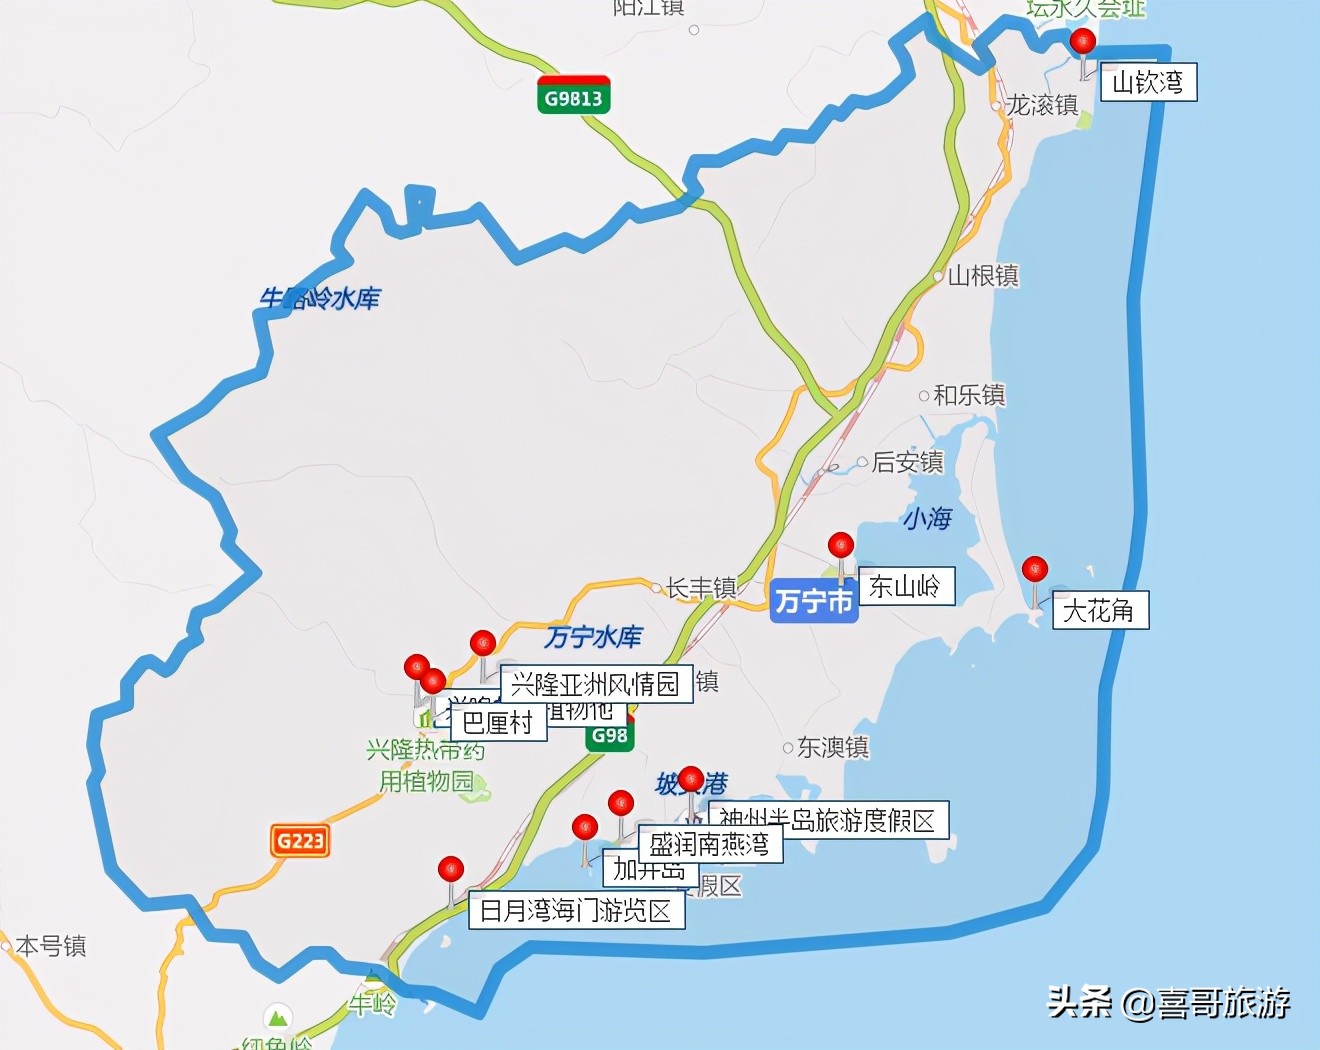 具体位置如图所示.万宁是海南省直辖市,素有温